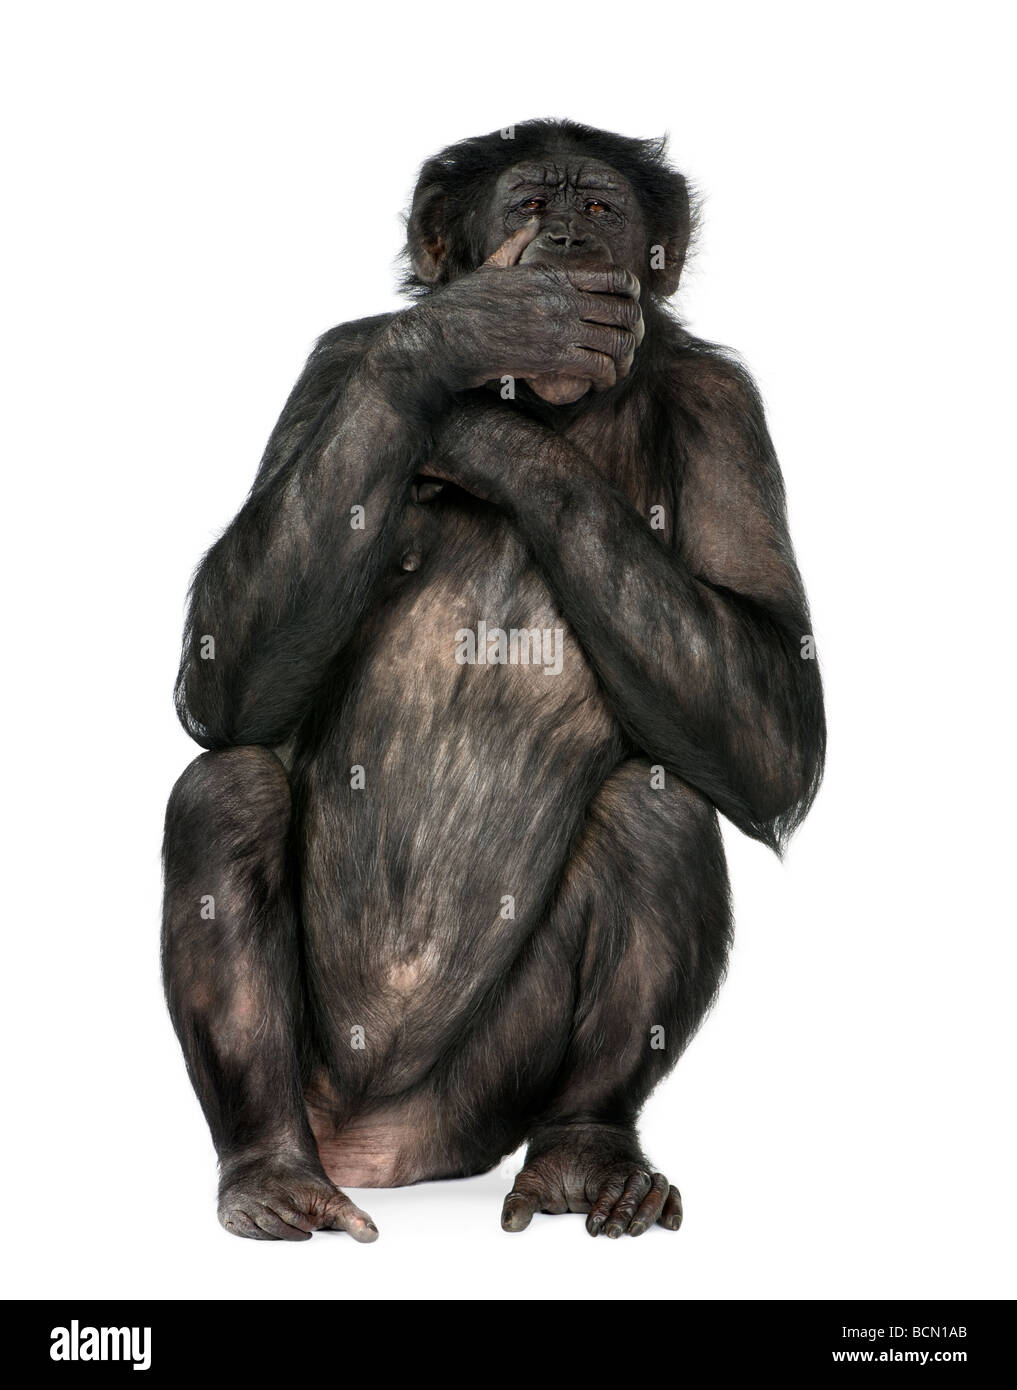 Non parlo di scimmia, di razza mista tra scimpanzé e Bonobo, 20 anni, di fronte a uno sfondo bianco Foto Stock